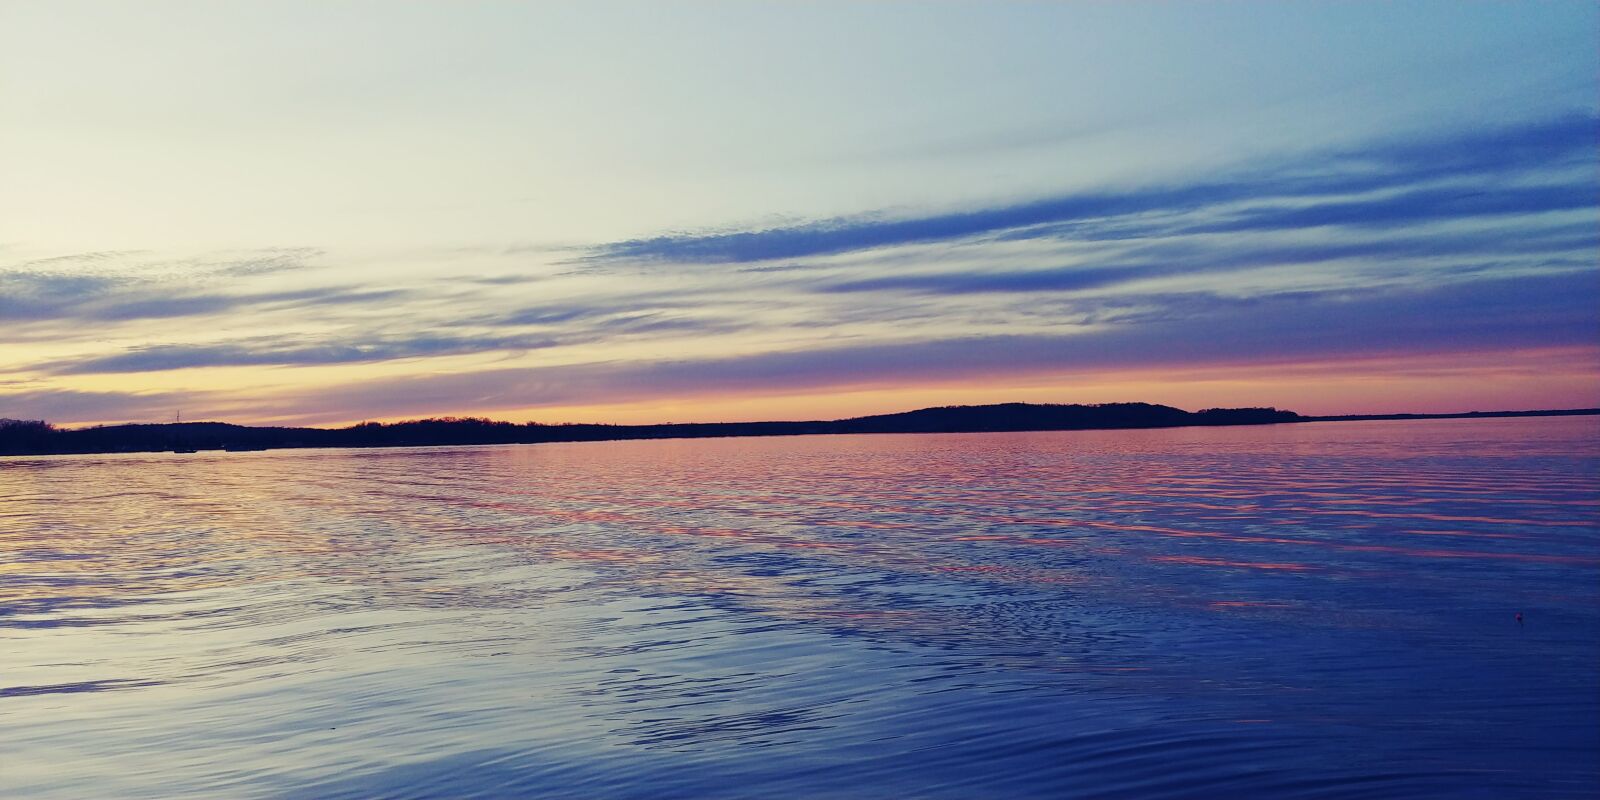 LG V30 sample photo. Lake, fishing, sunset photography